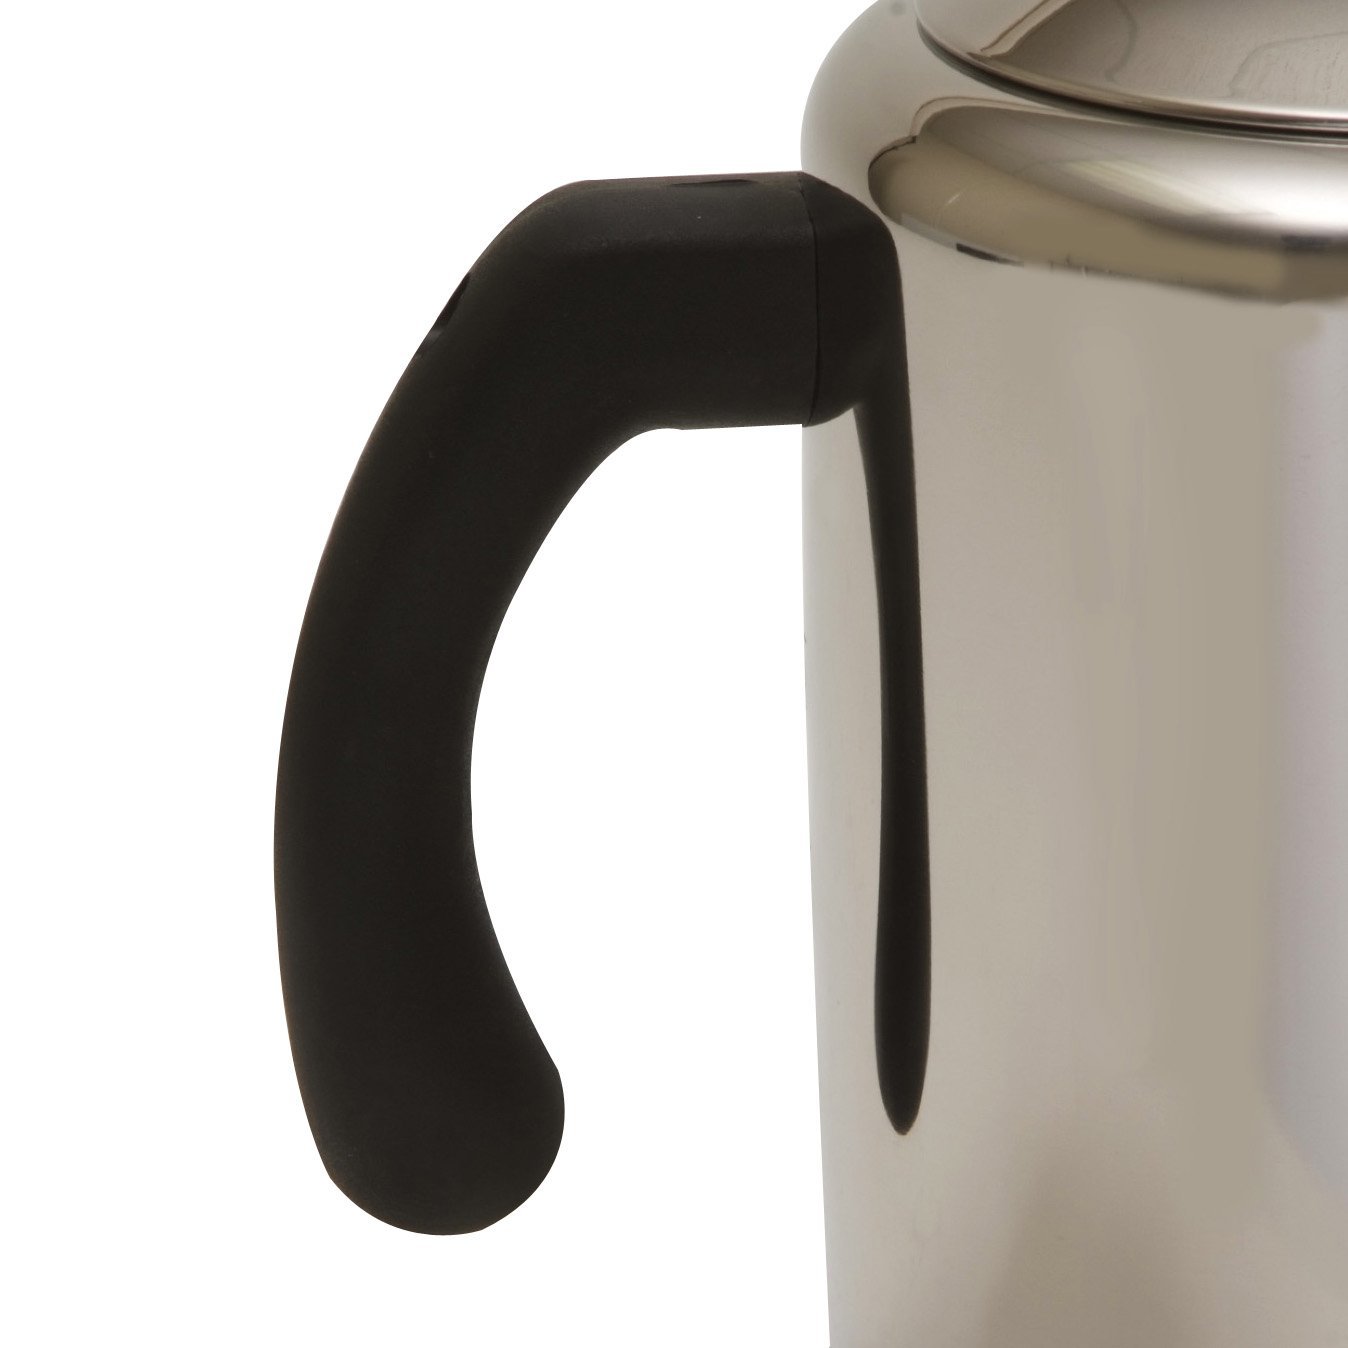 OEM咖啡壶制造商彩虹咖啡壶制造商中国不锈钢咖啡壶批发